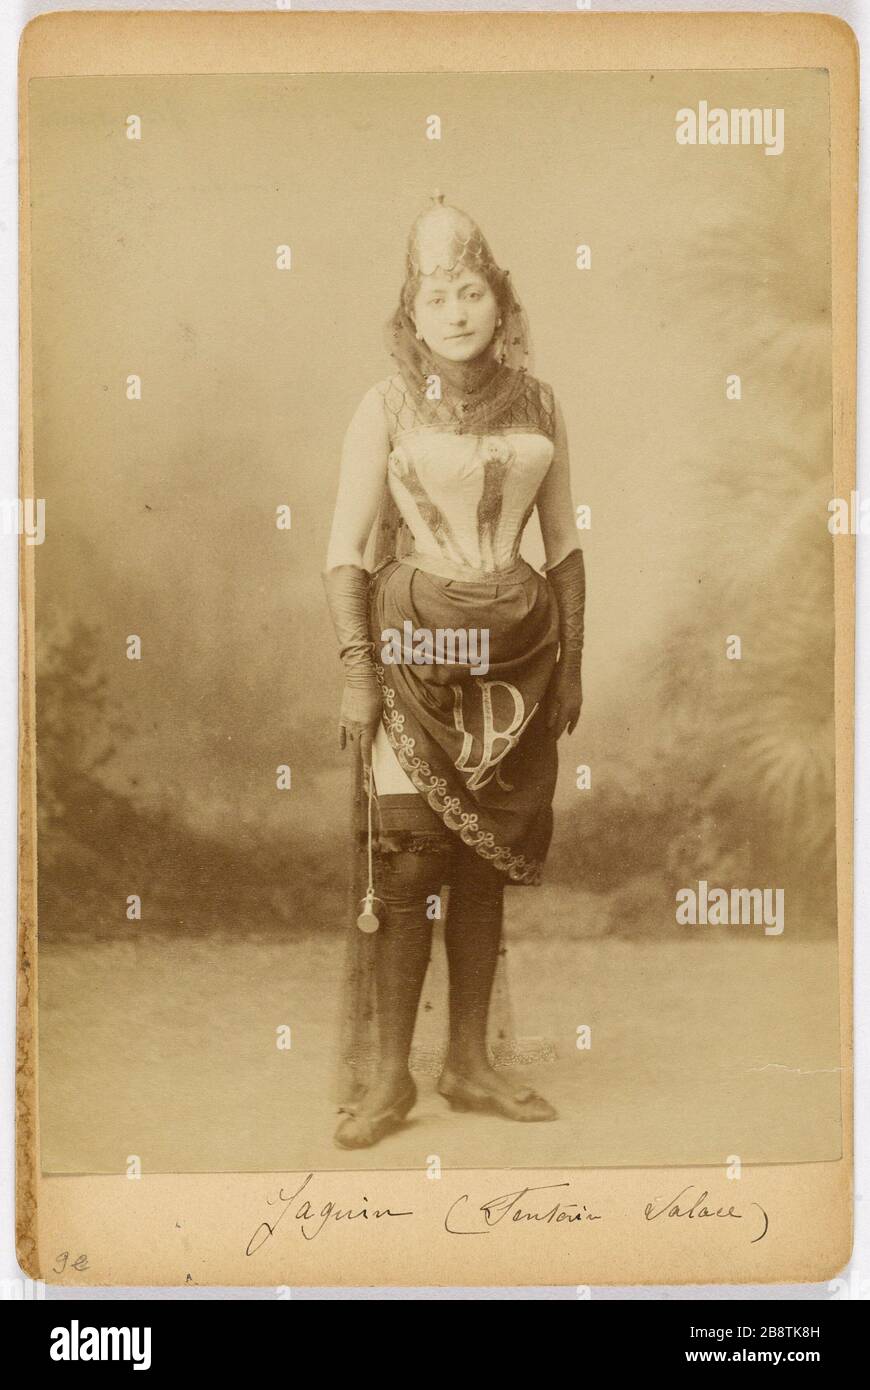 Portrait of Jaguin, actress 'Jaguin, actrice'. Photographie anonyme. Tirage sur papier albuminé. Paris, musée Carnavalet. Stock Photo